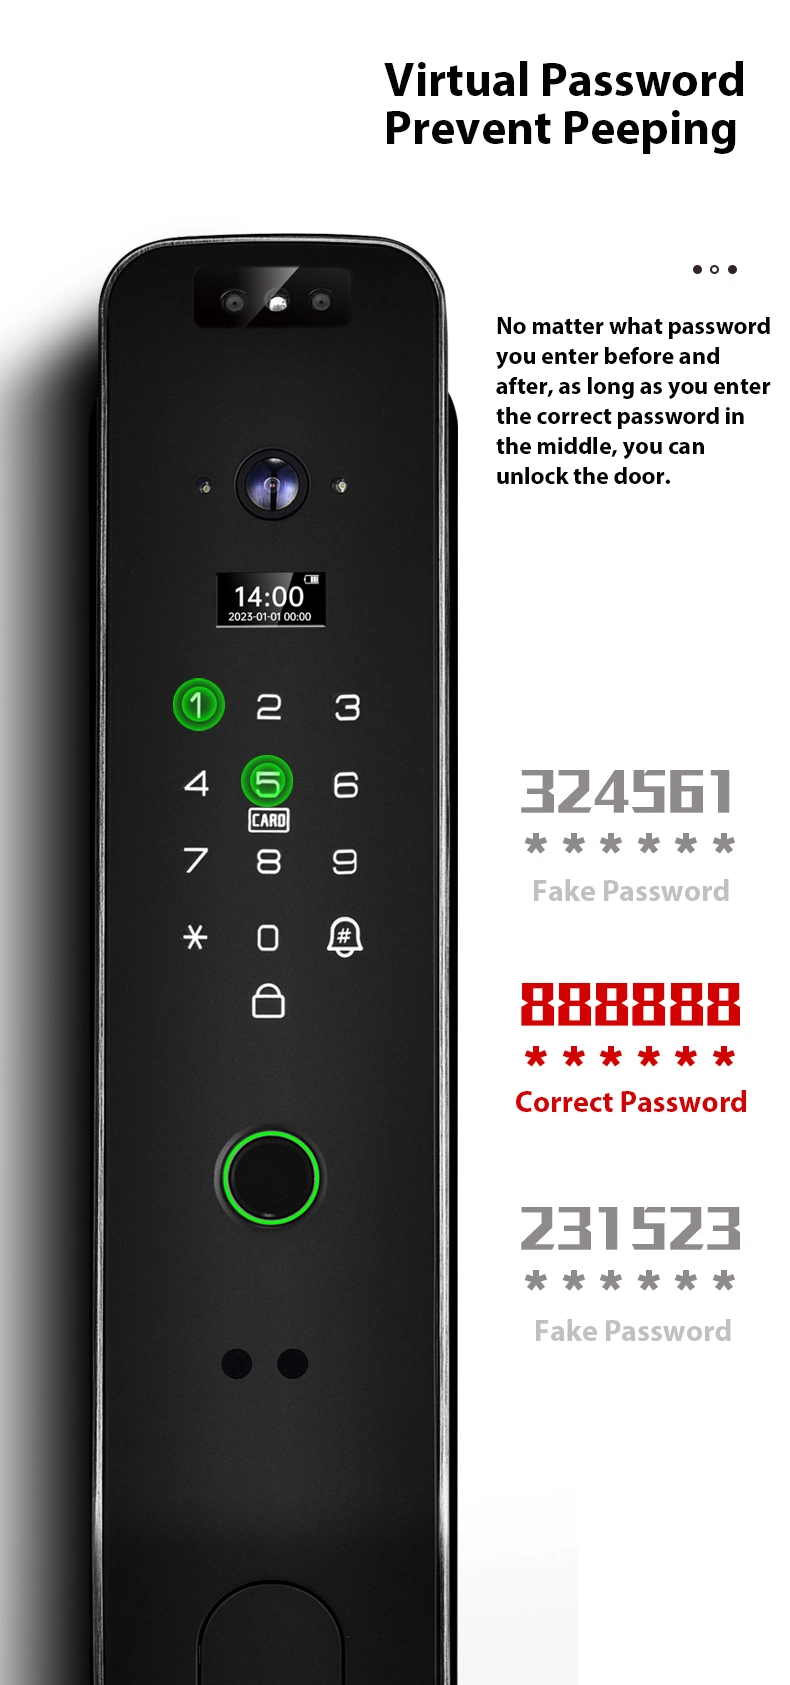 Home Front Door Keyless Smart Lock 3D Face Recognition Smart Door Lock with Camera